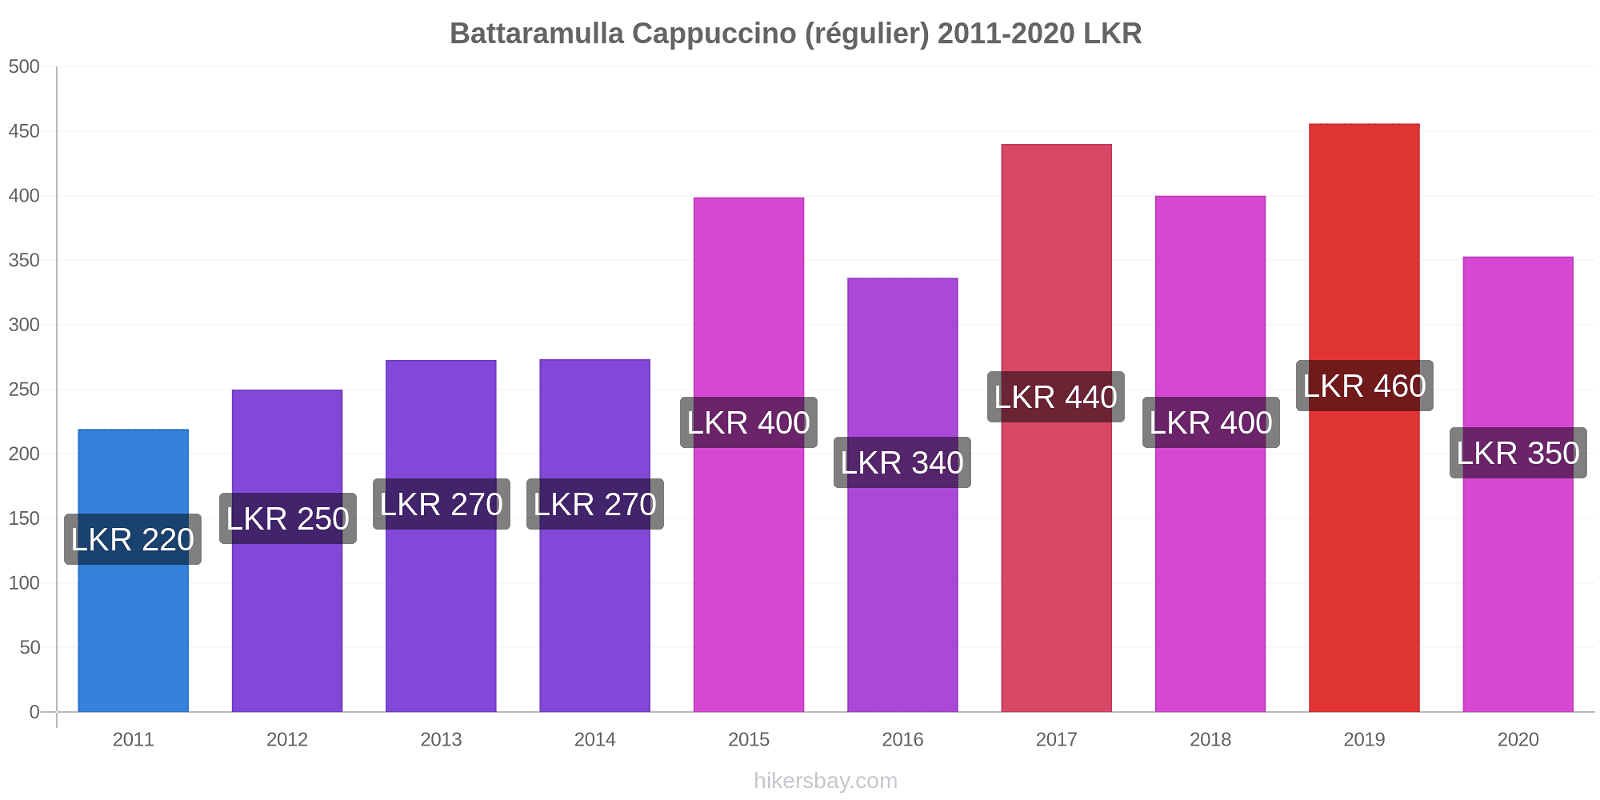 Battaramulla changements de prix Cappuccino (régulier) hikersbay.com